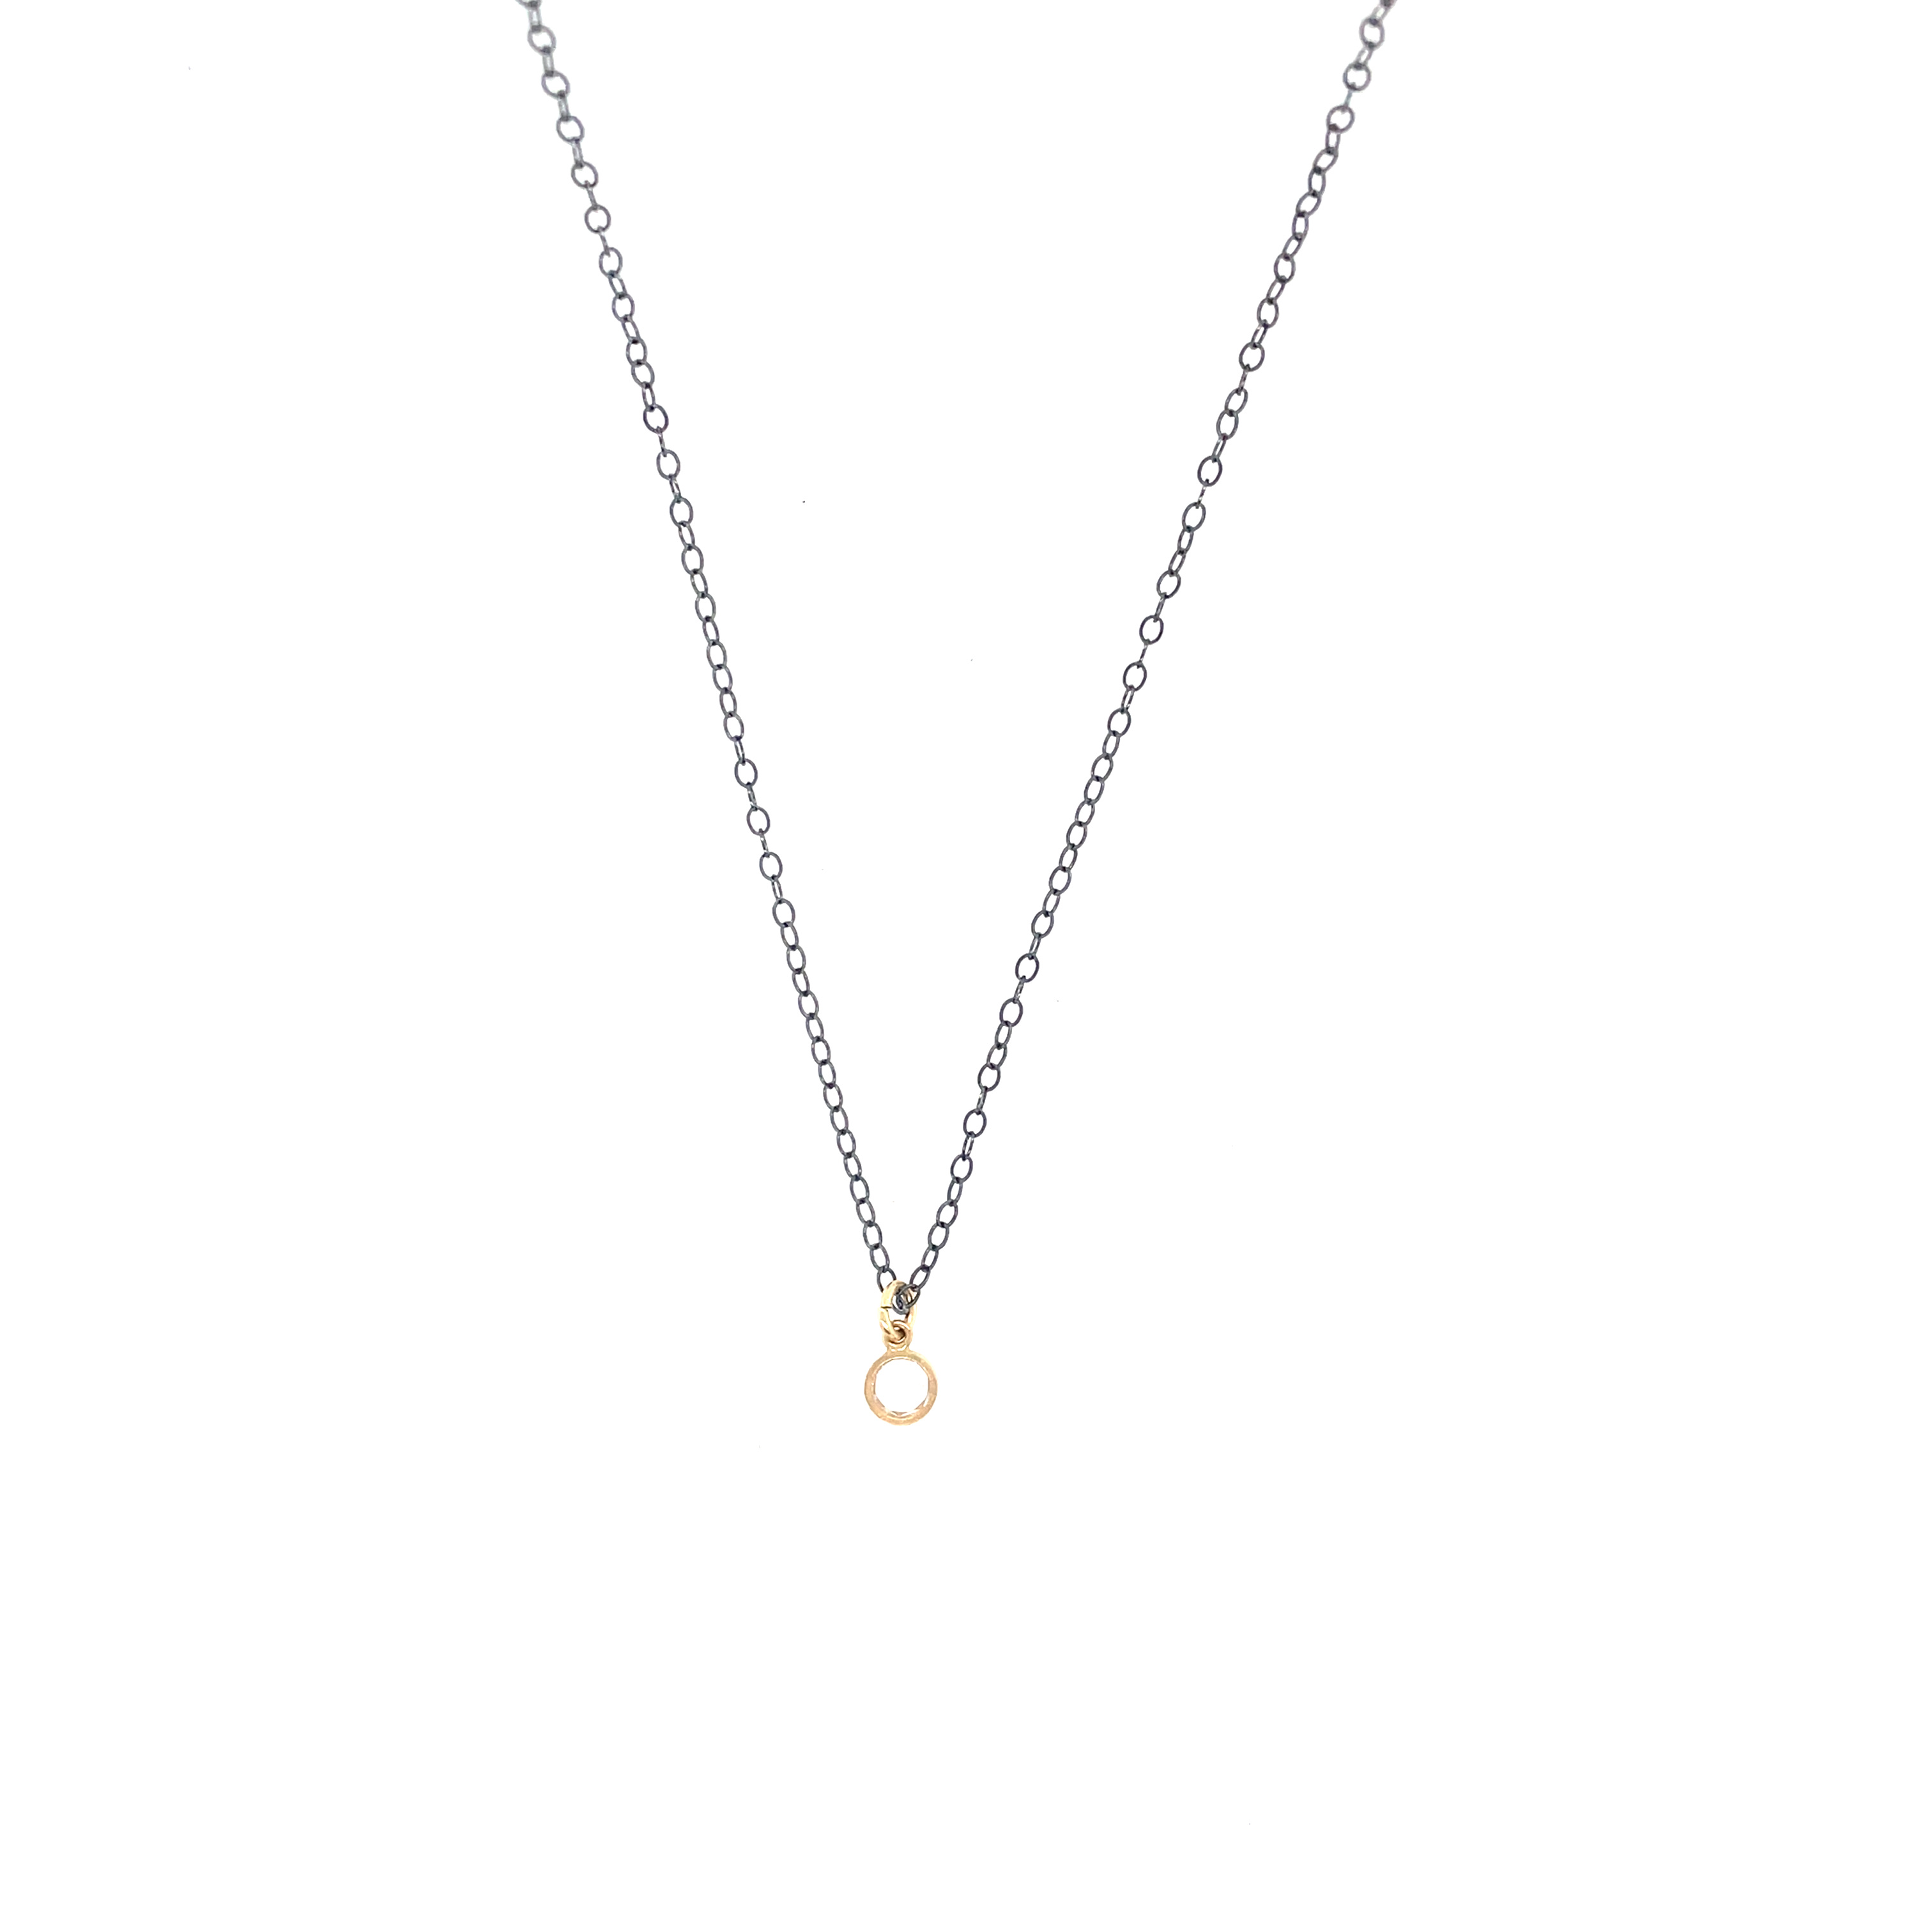 CZ Bezel Set Charm Necklace - Oxidized with Gold Charm